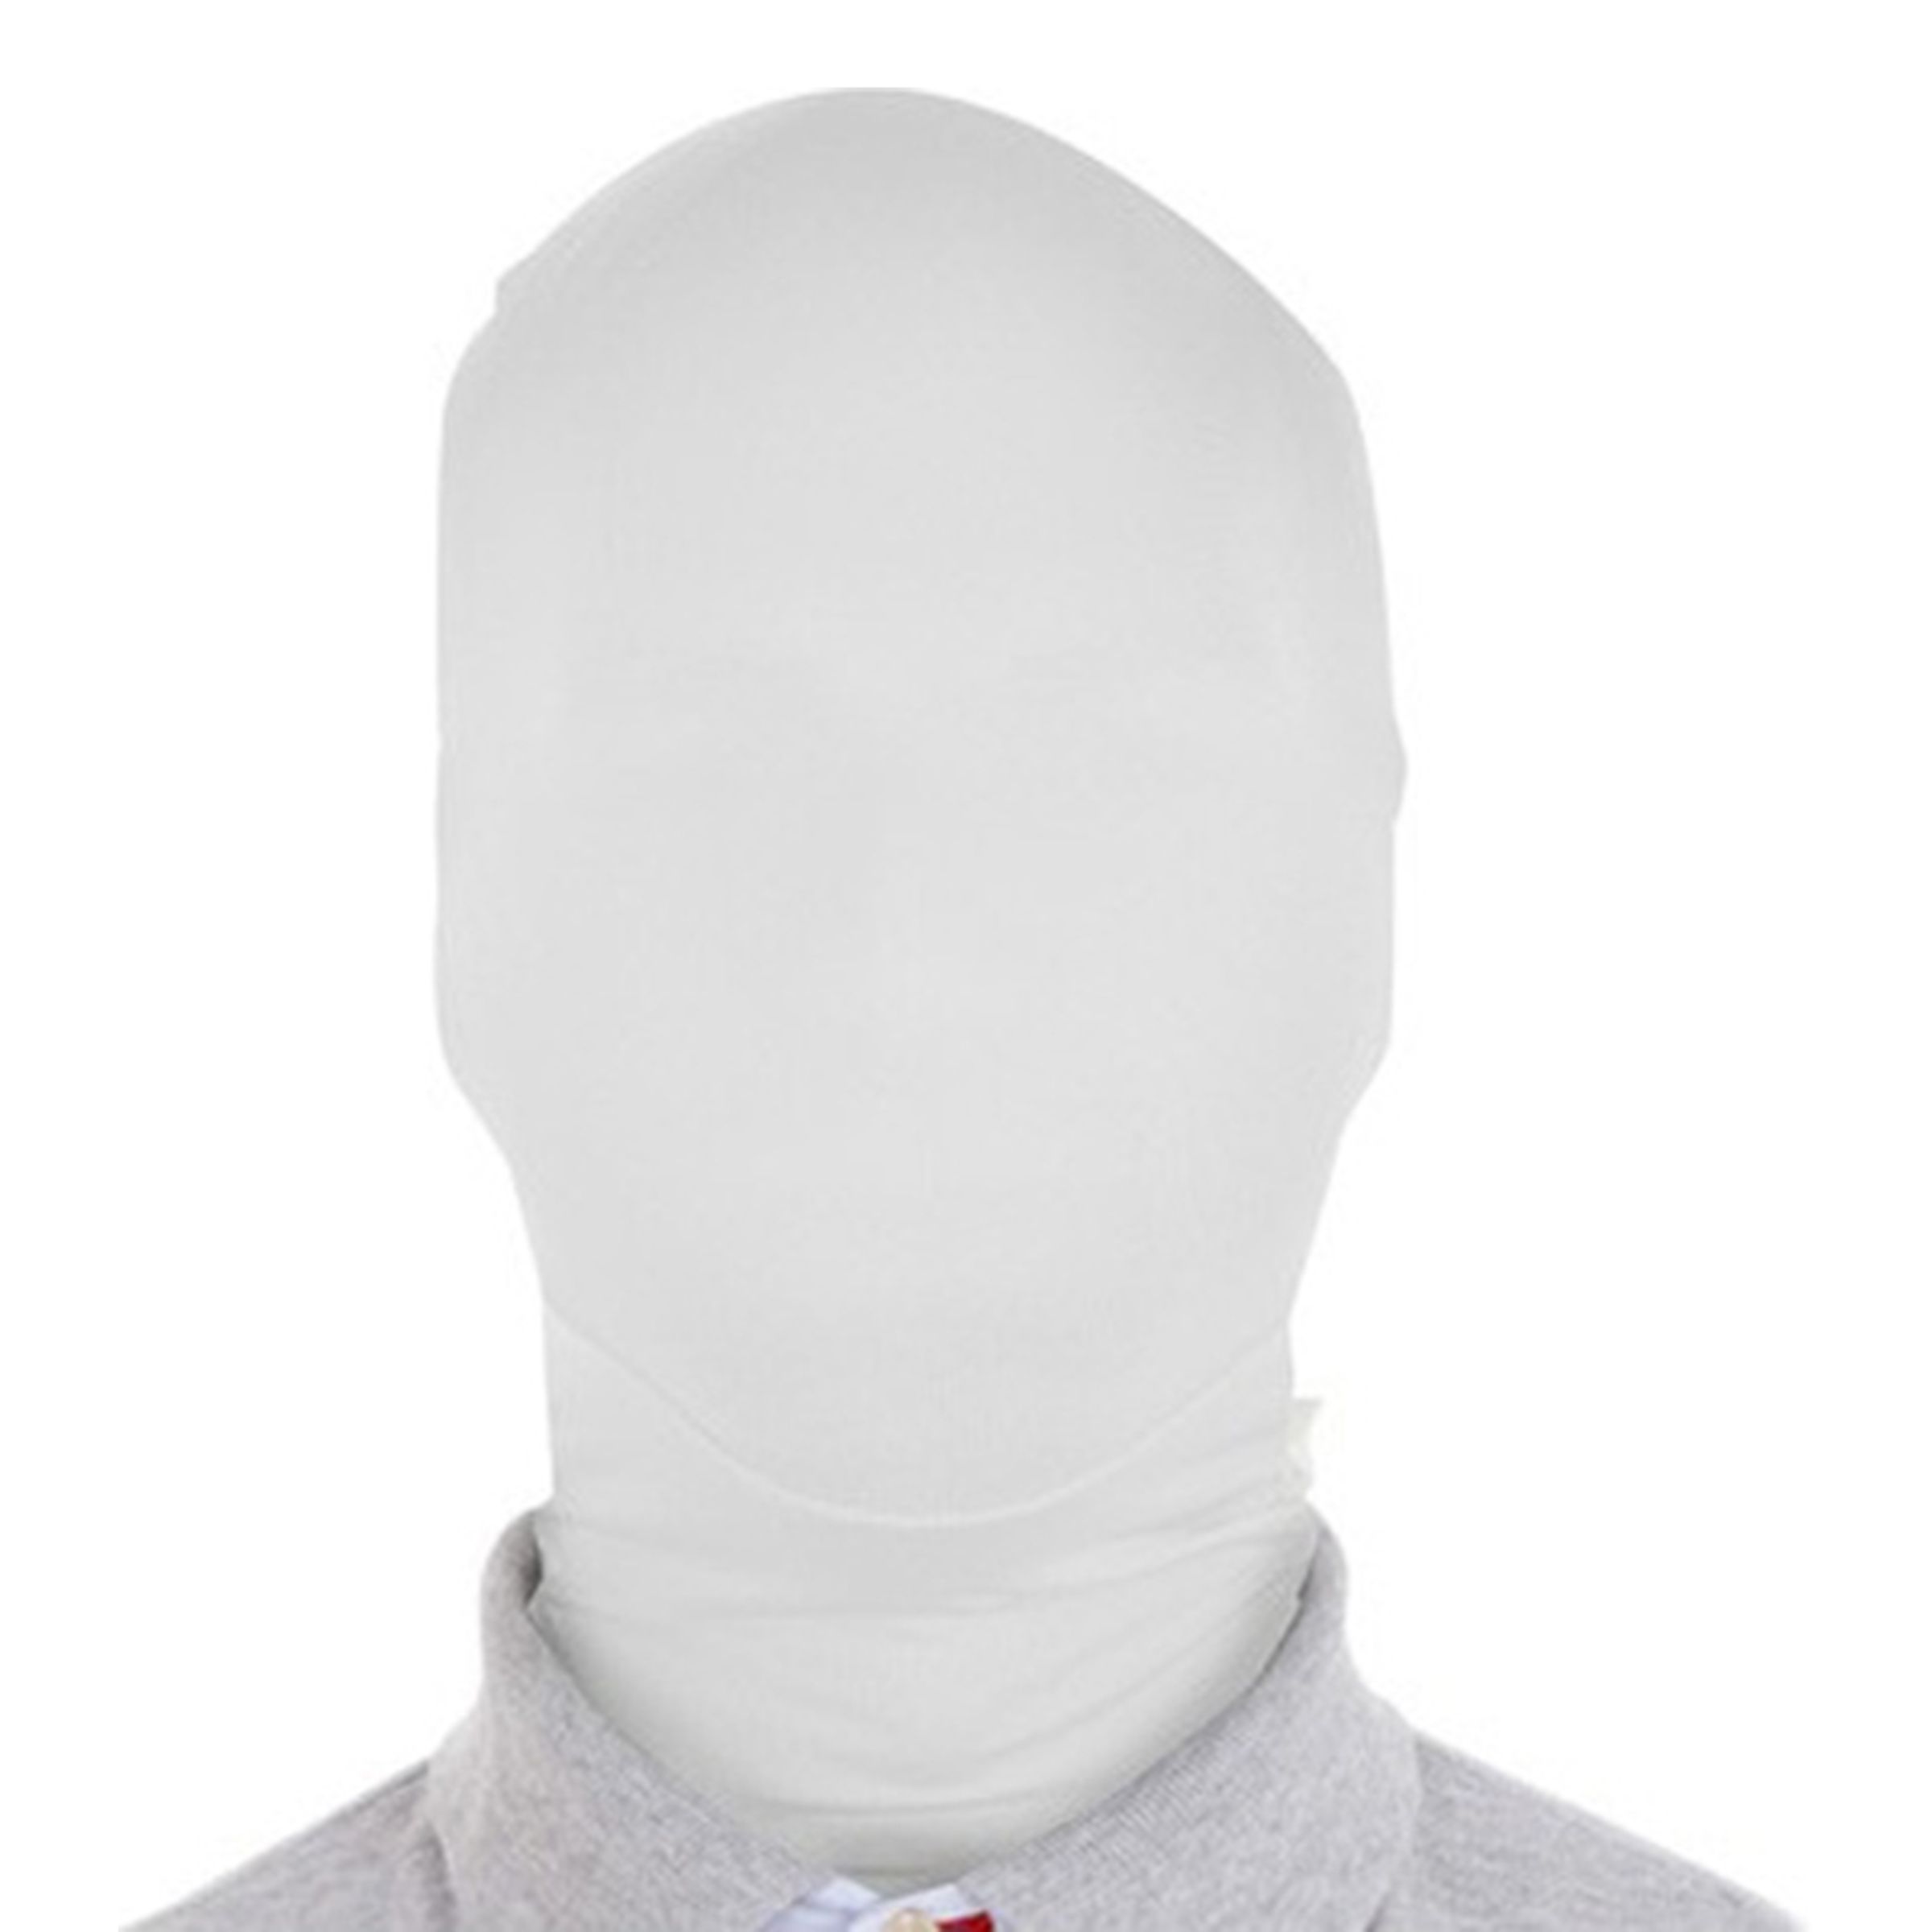 Slenderman Mask - One size